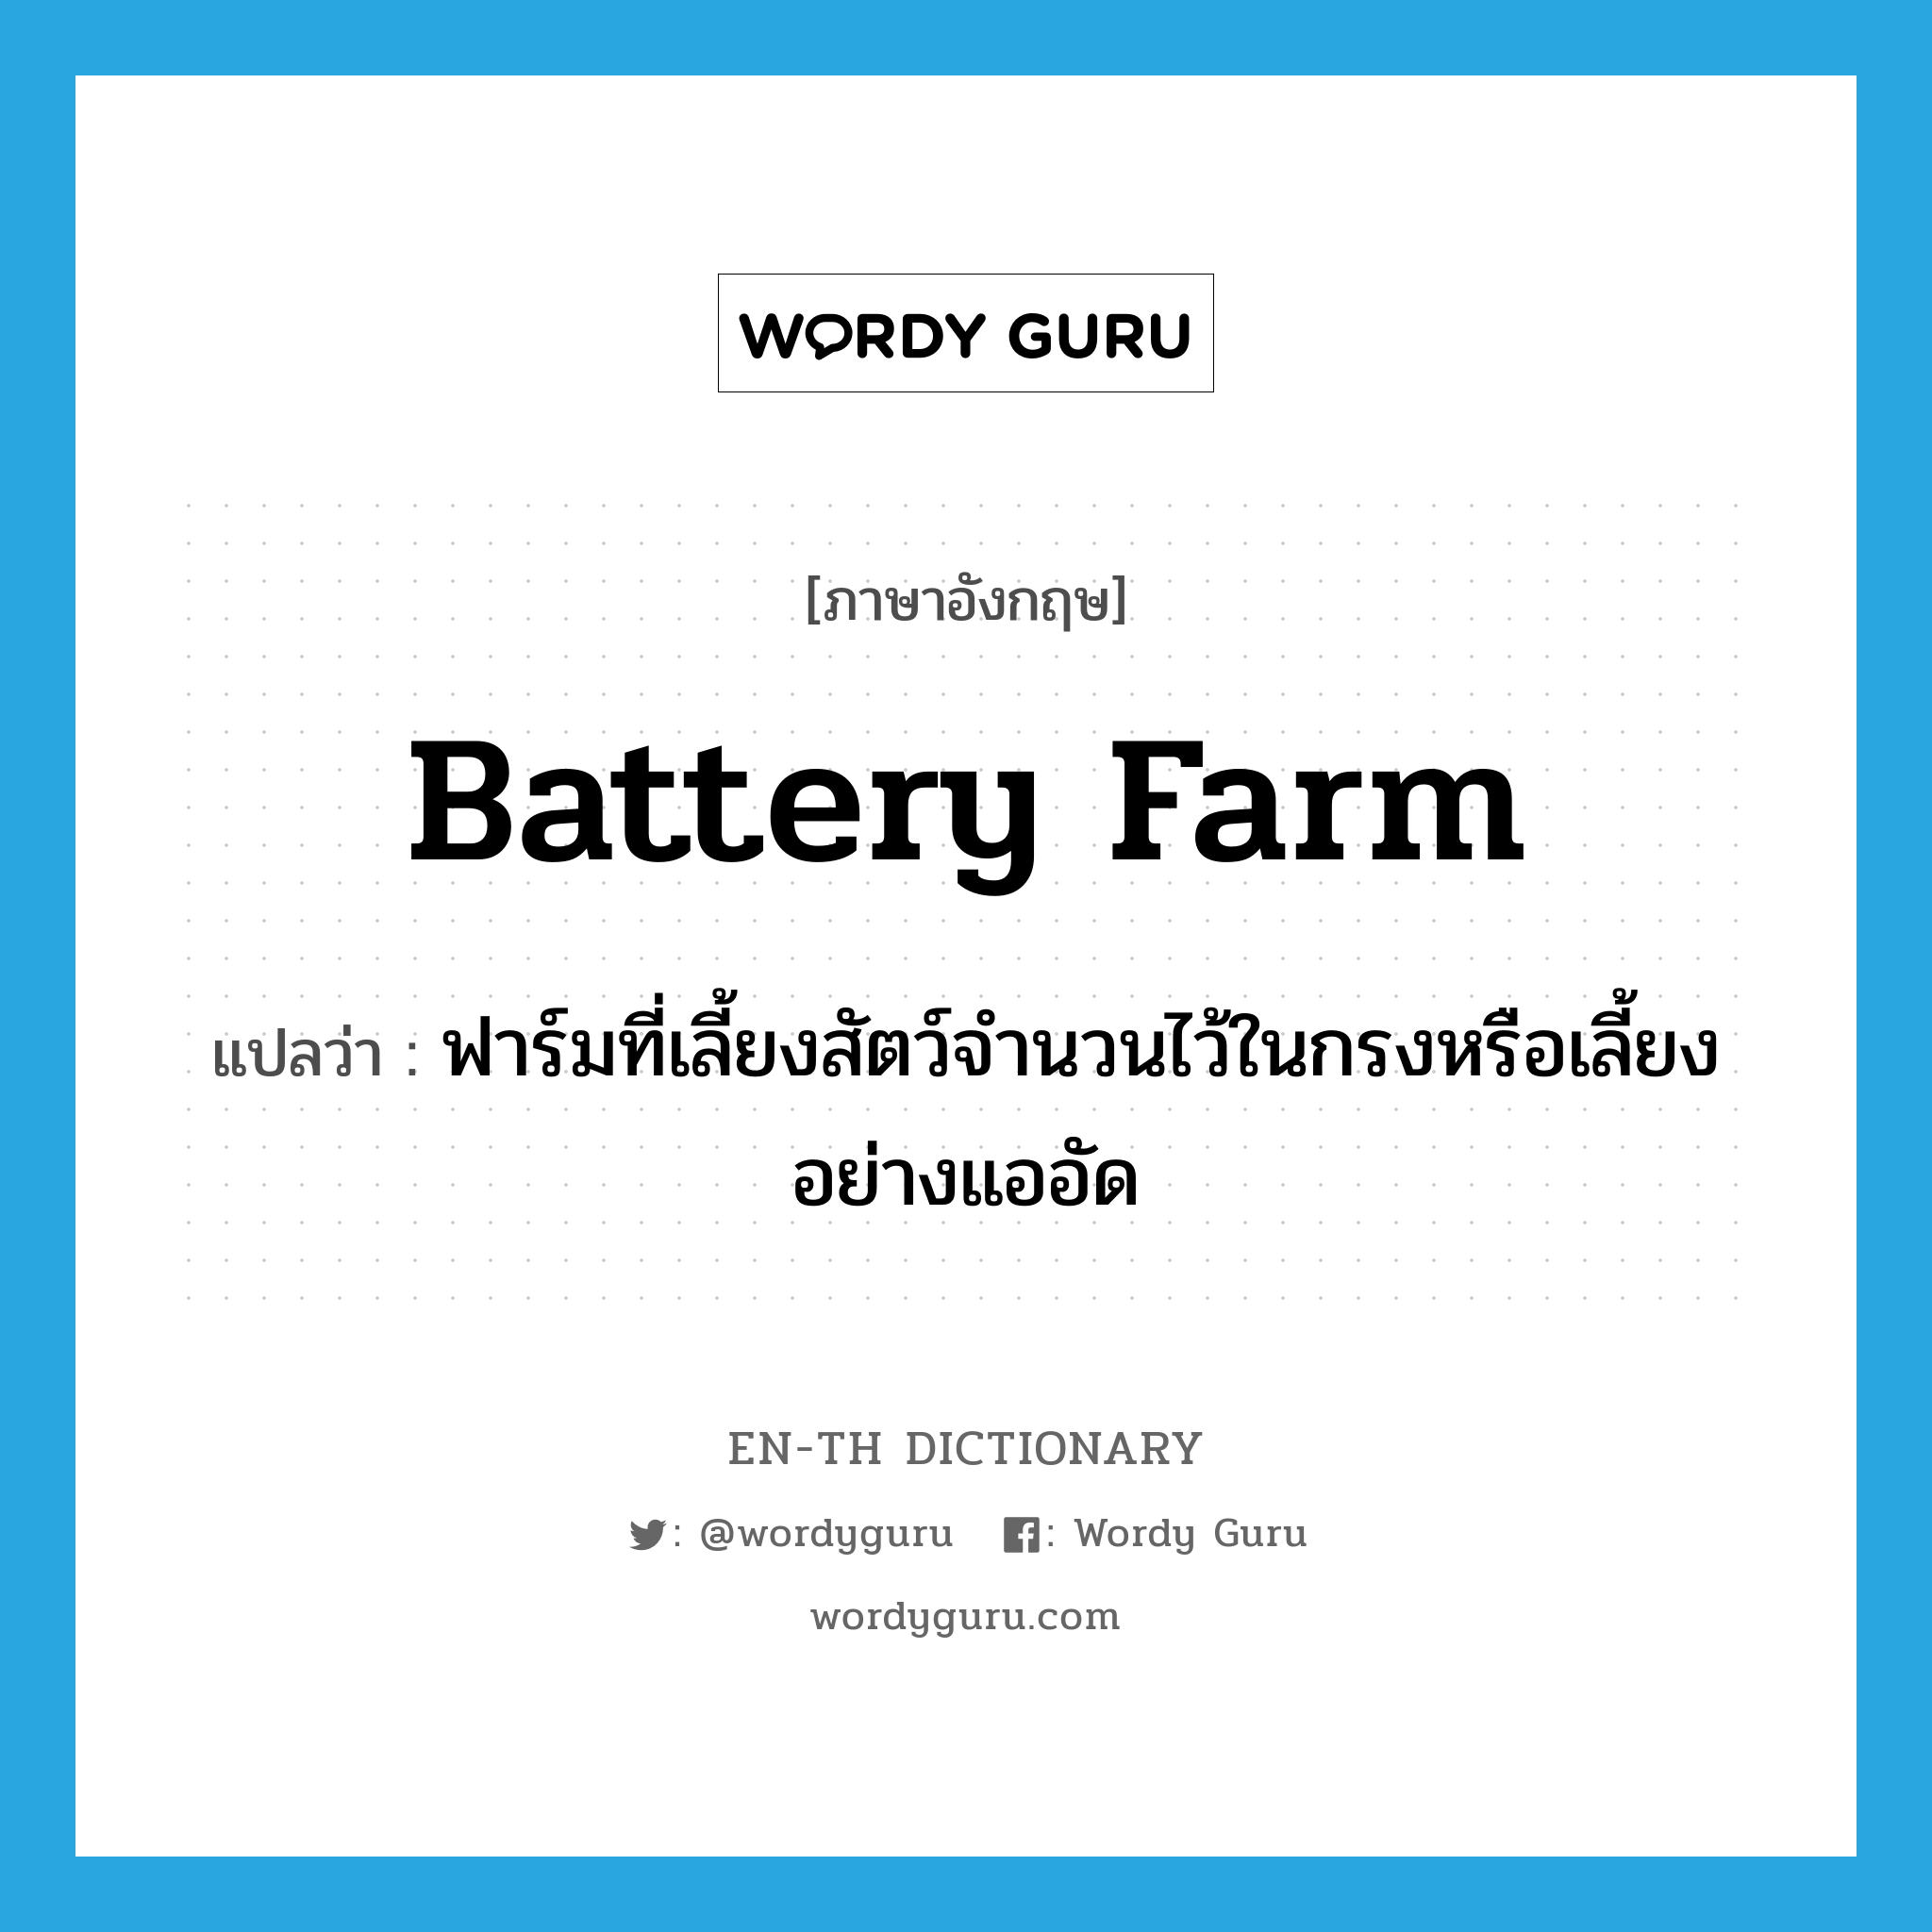 battery farm แปลว่า?, คำศัพท์ภาษาอังกฤษ battery farm แปลว่า ฟาร์มที่เลี้ยงสัตว์จำนวนไว้ในกรงหรือเลี้ยงอย่างแออัด ประเภท N หมวด N